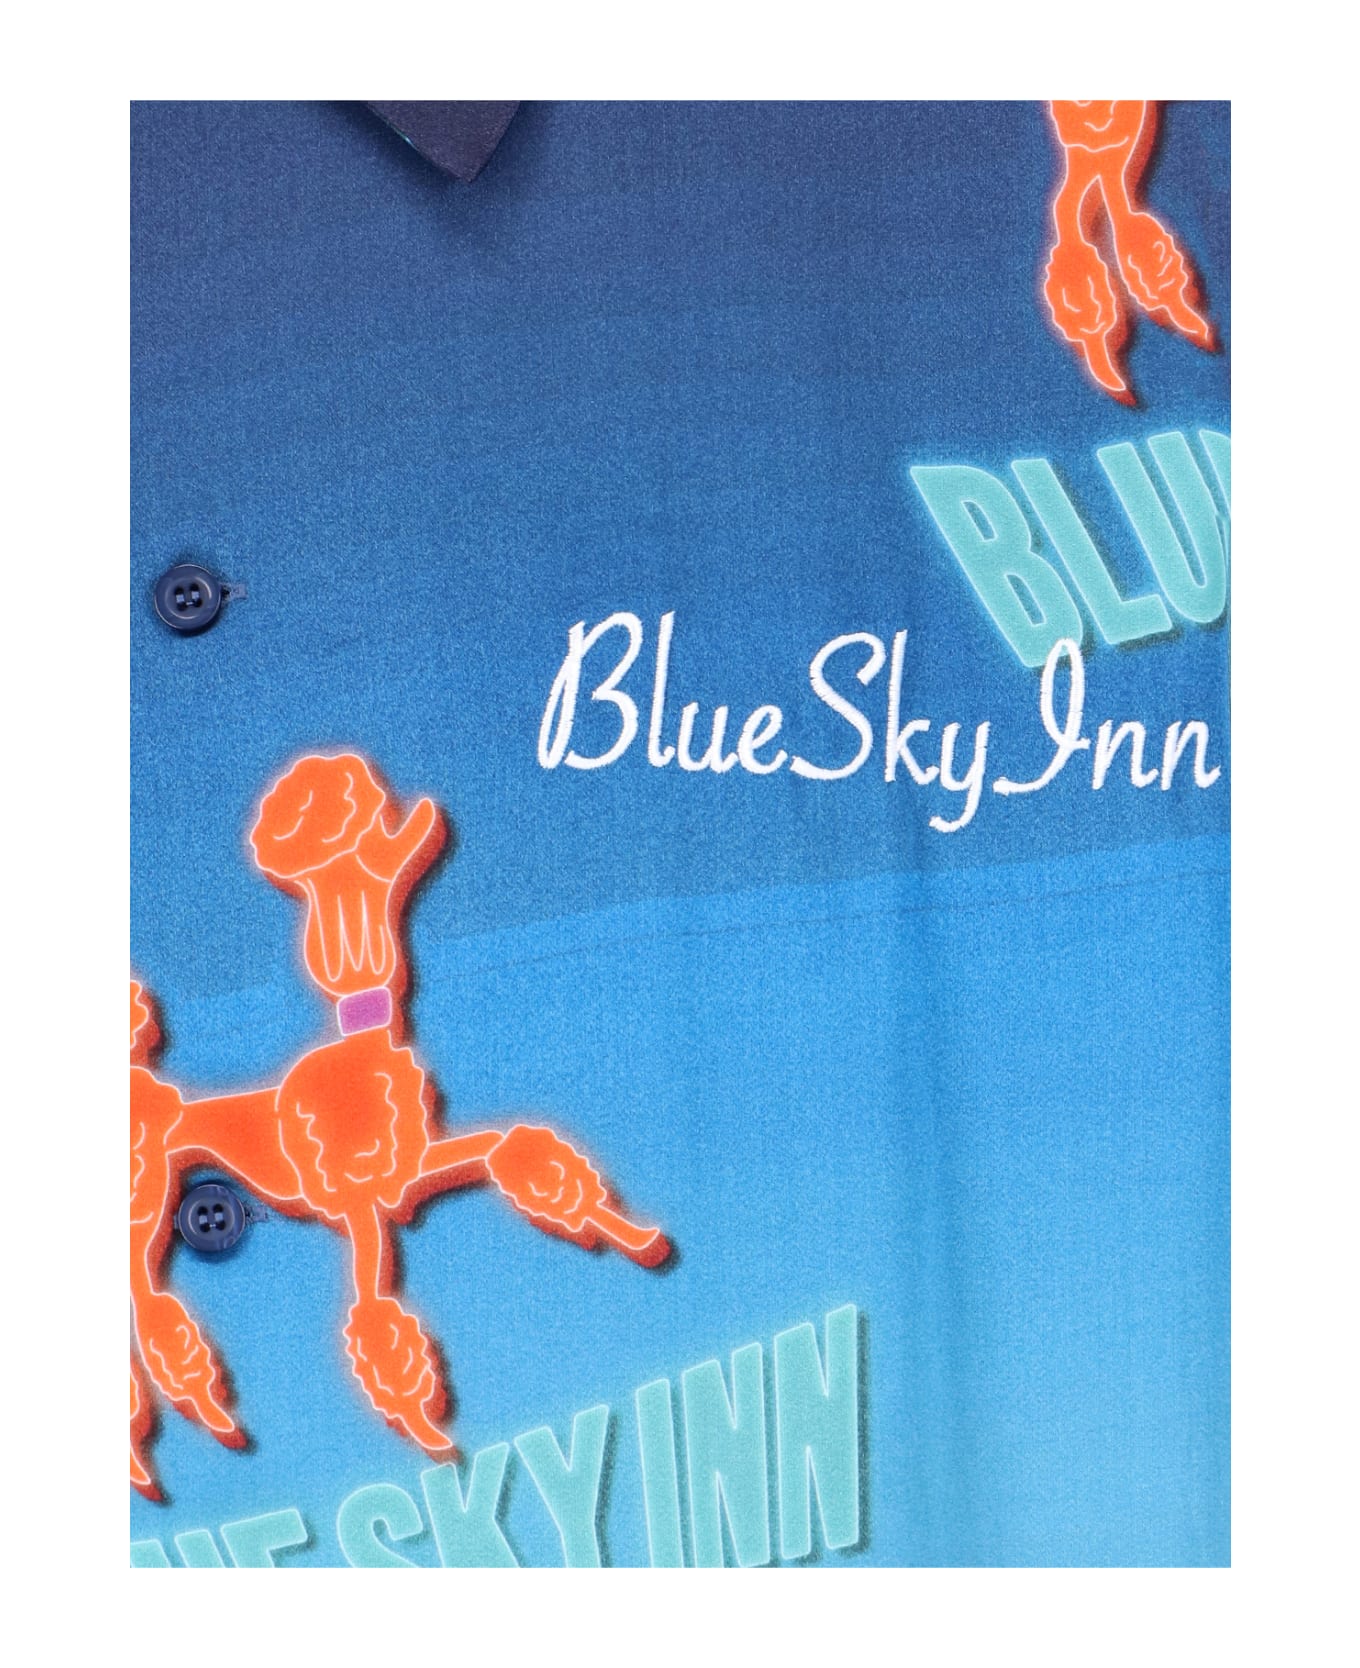 Blue Sky Inn Printed Shirt - Light Blue シャツ